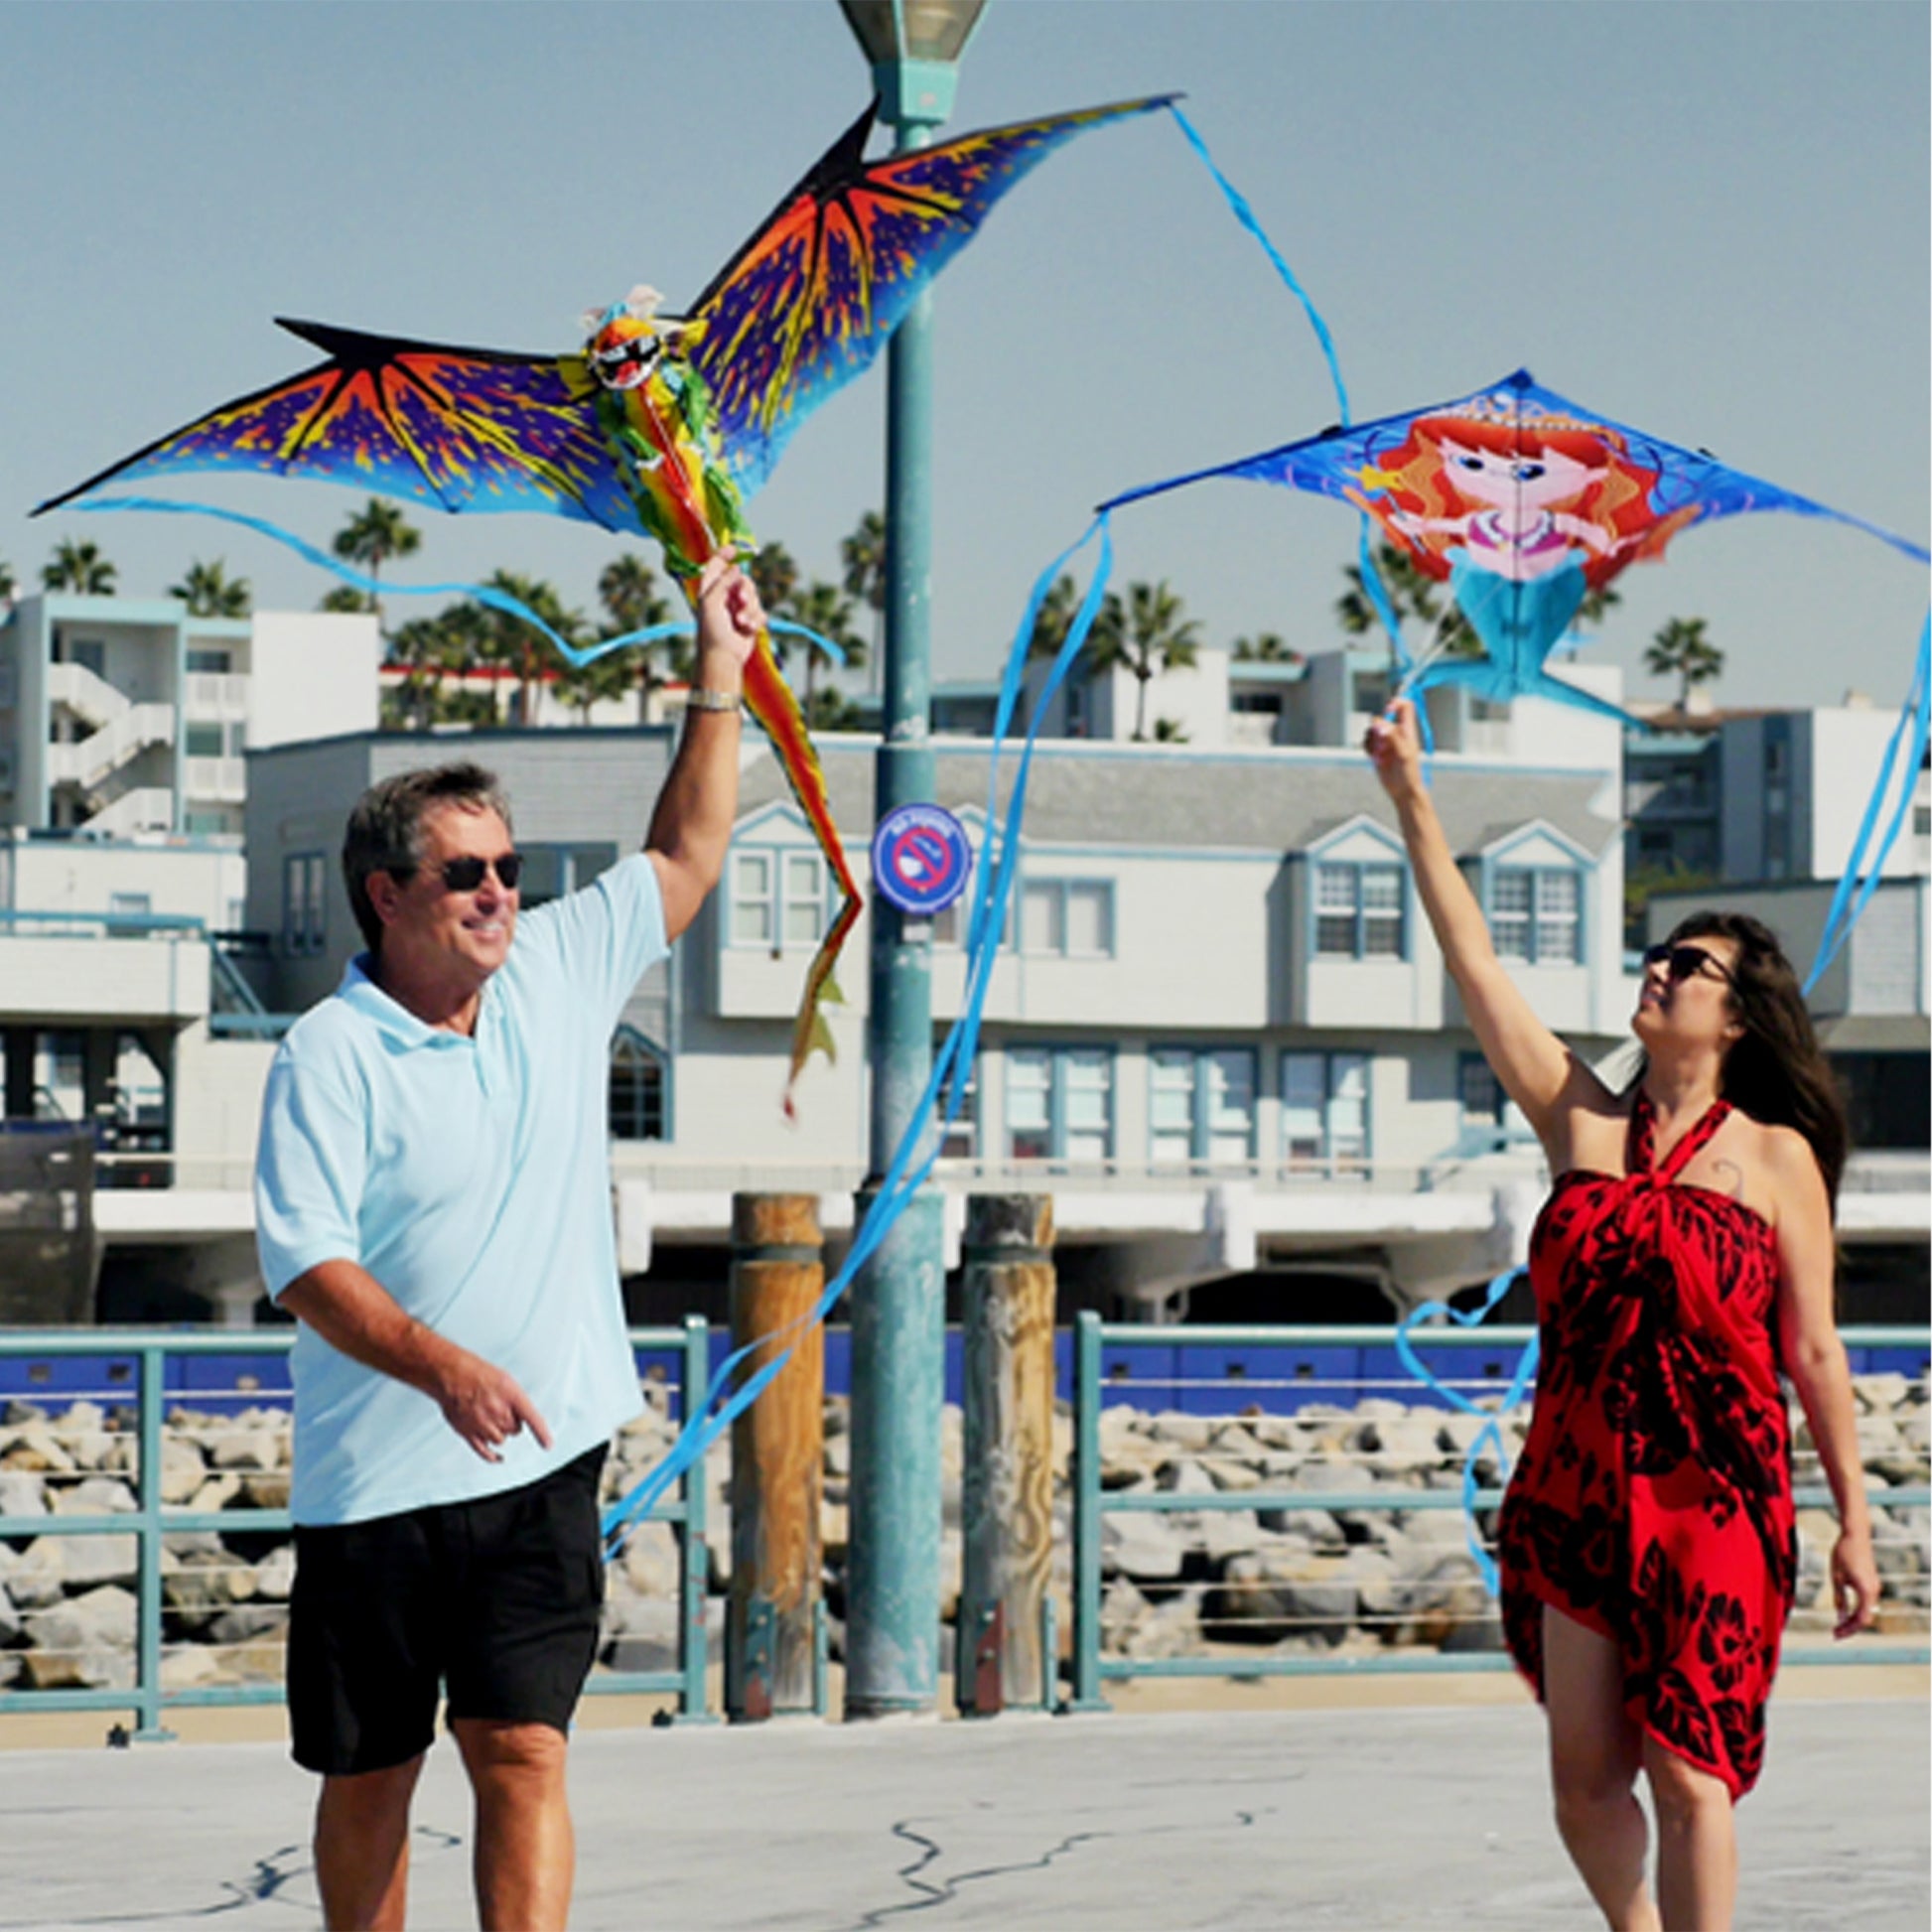 A man and woman walking along a beach boarwalk, each holding a kite over their head